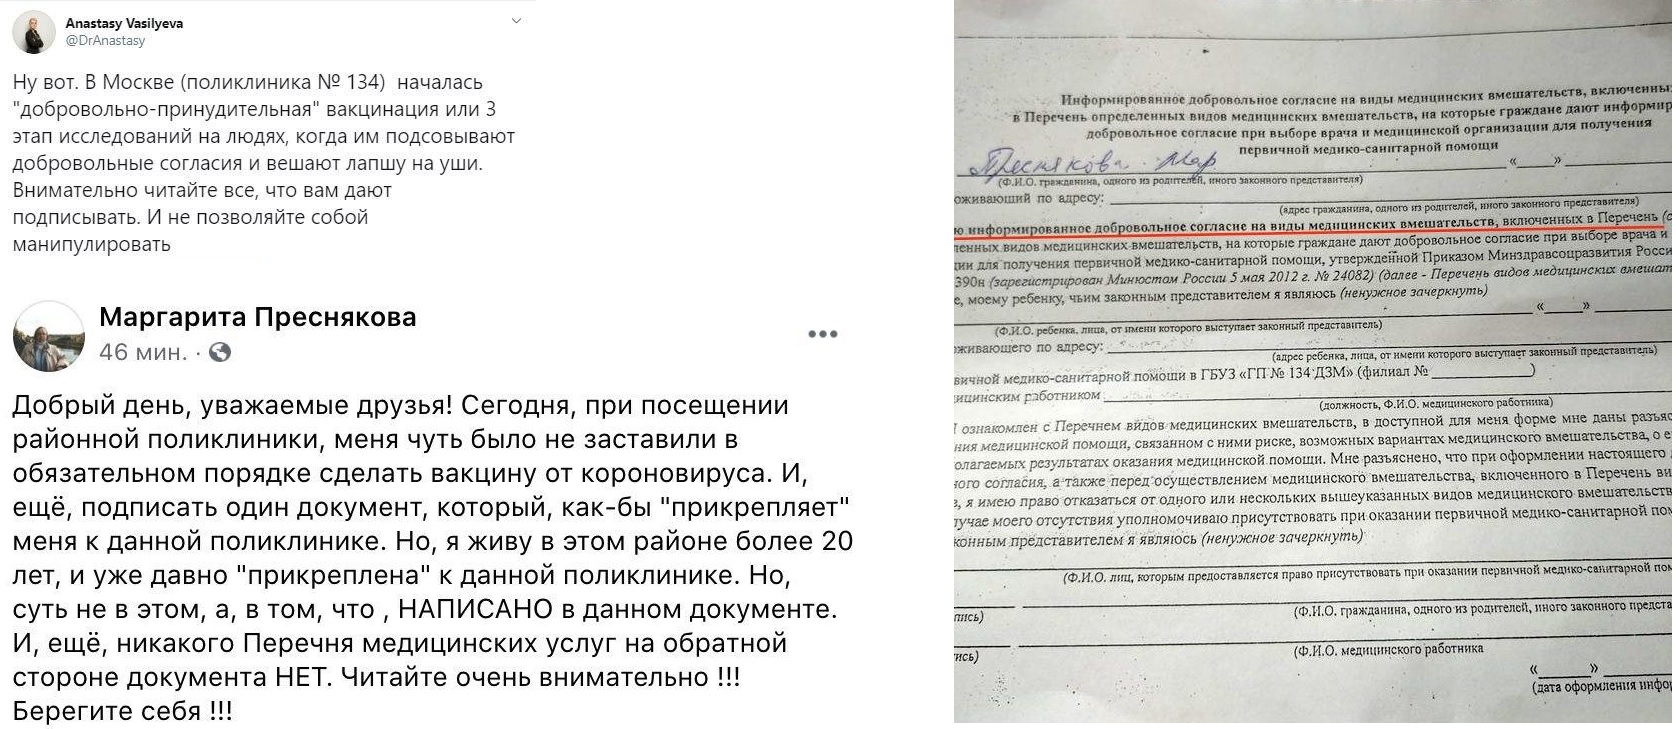 Москвичка пожаловалась на принудительную вакцинацию, испугавшись бланка